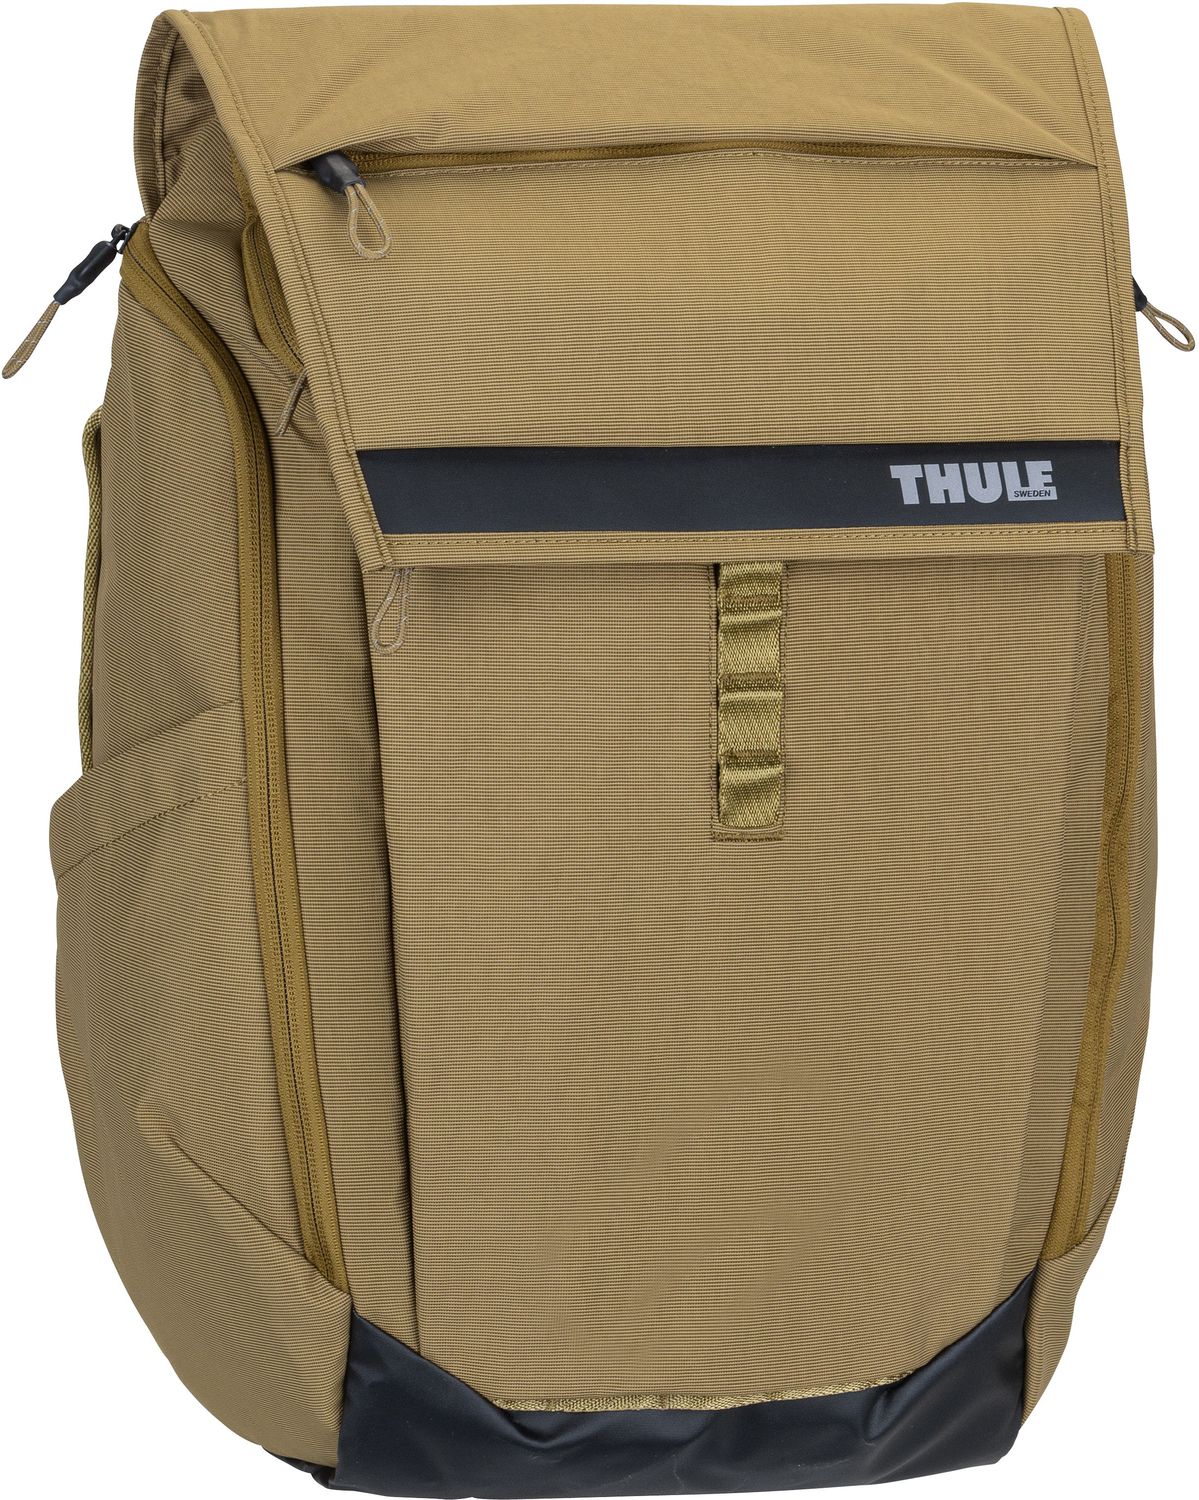 Thule Paramount 3 Backpack 27L  in Oliv (27 Liter), Rucksack / Backpack